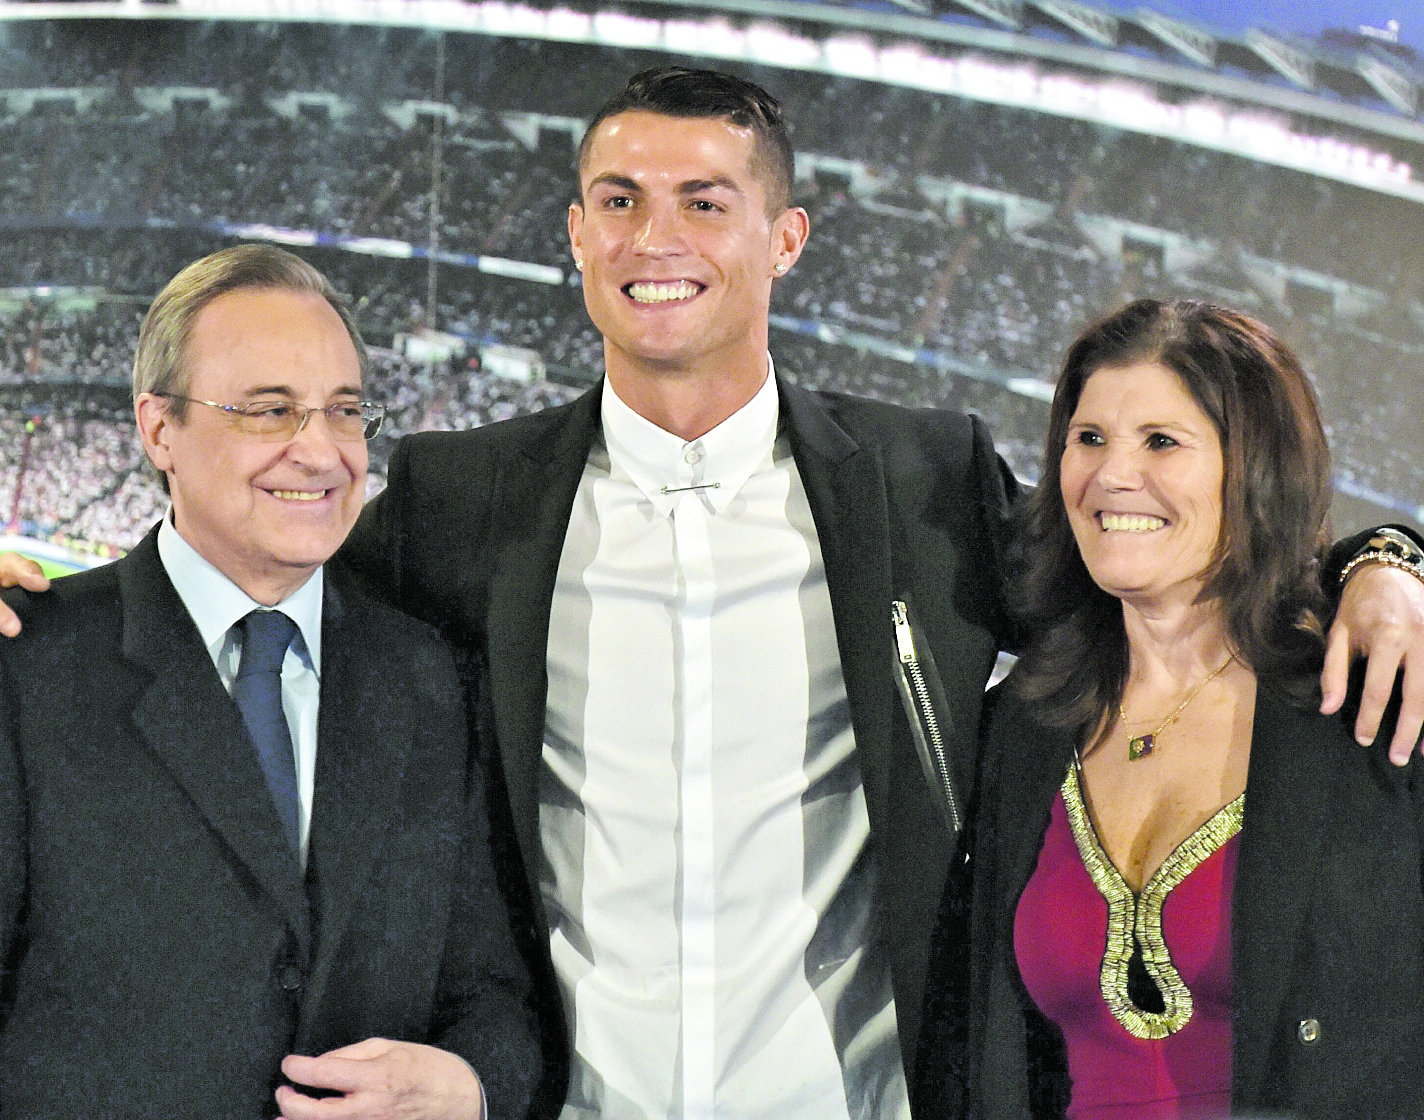 Fotografía del día en que el Real Madrid presentó a Cristiano Ronaldo. (Foto Prensa Libre: Hemeroteca PL)